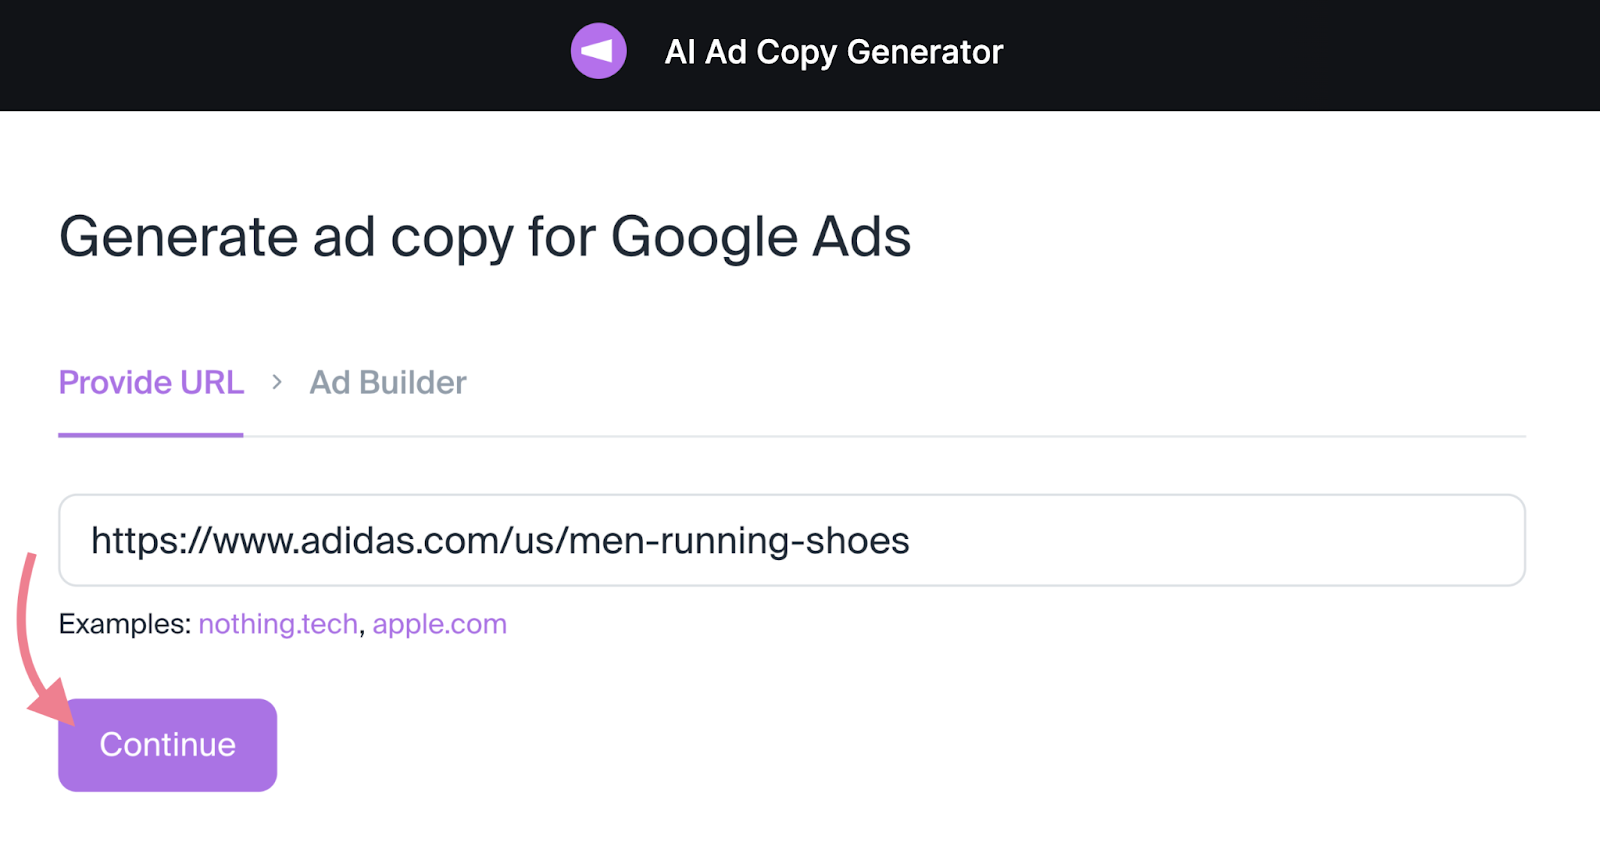 Enter URL in AI Ad Copy Generator